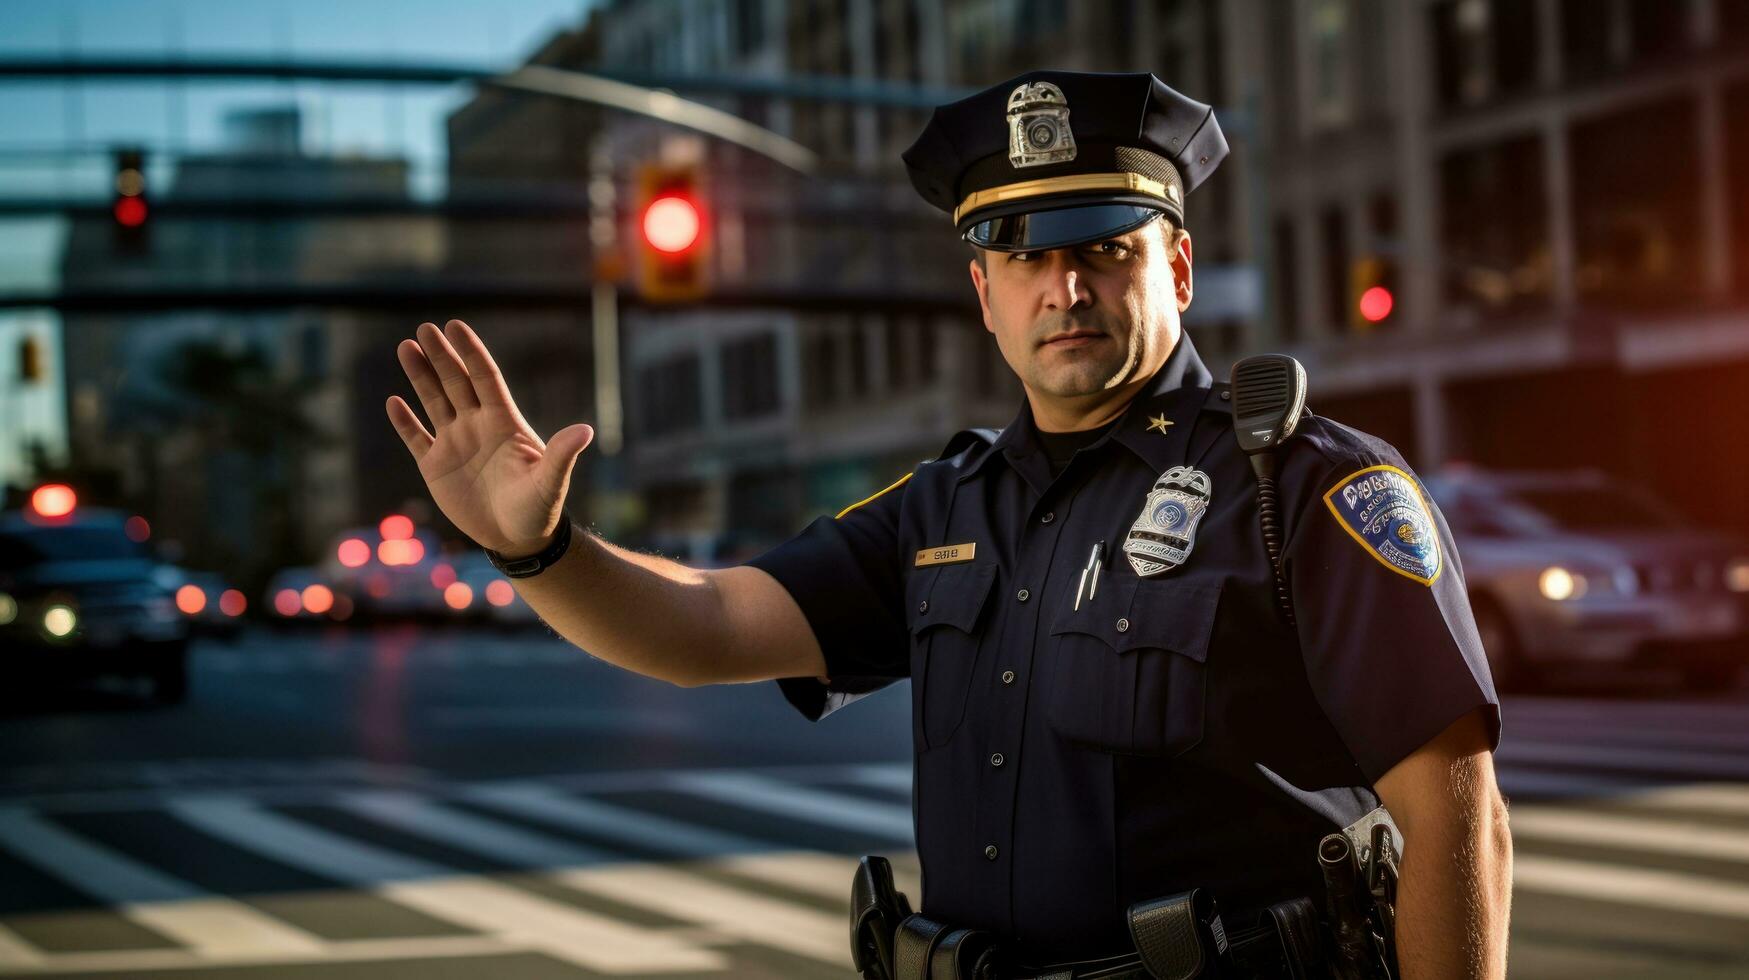 police officier sur le rue photo